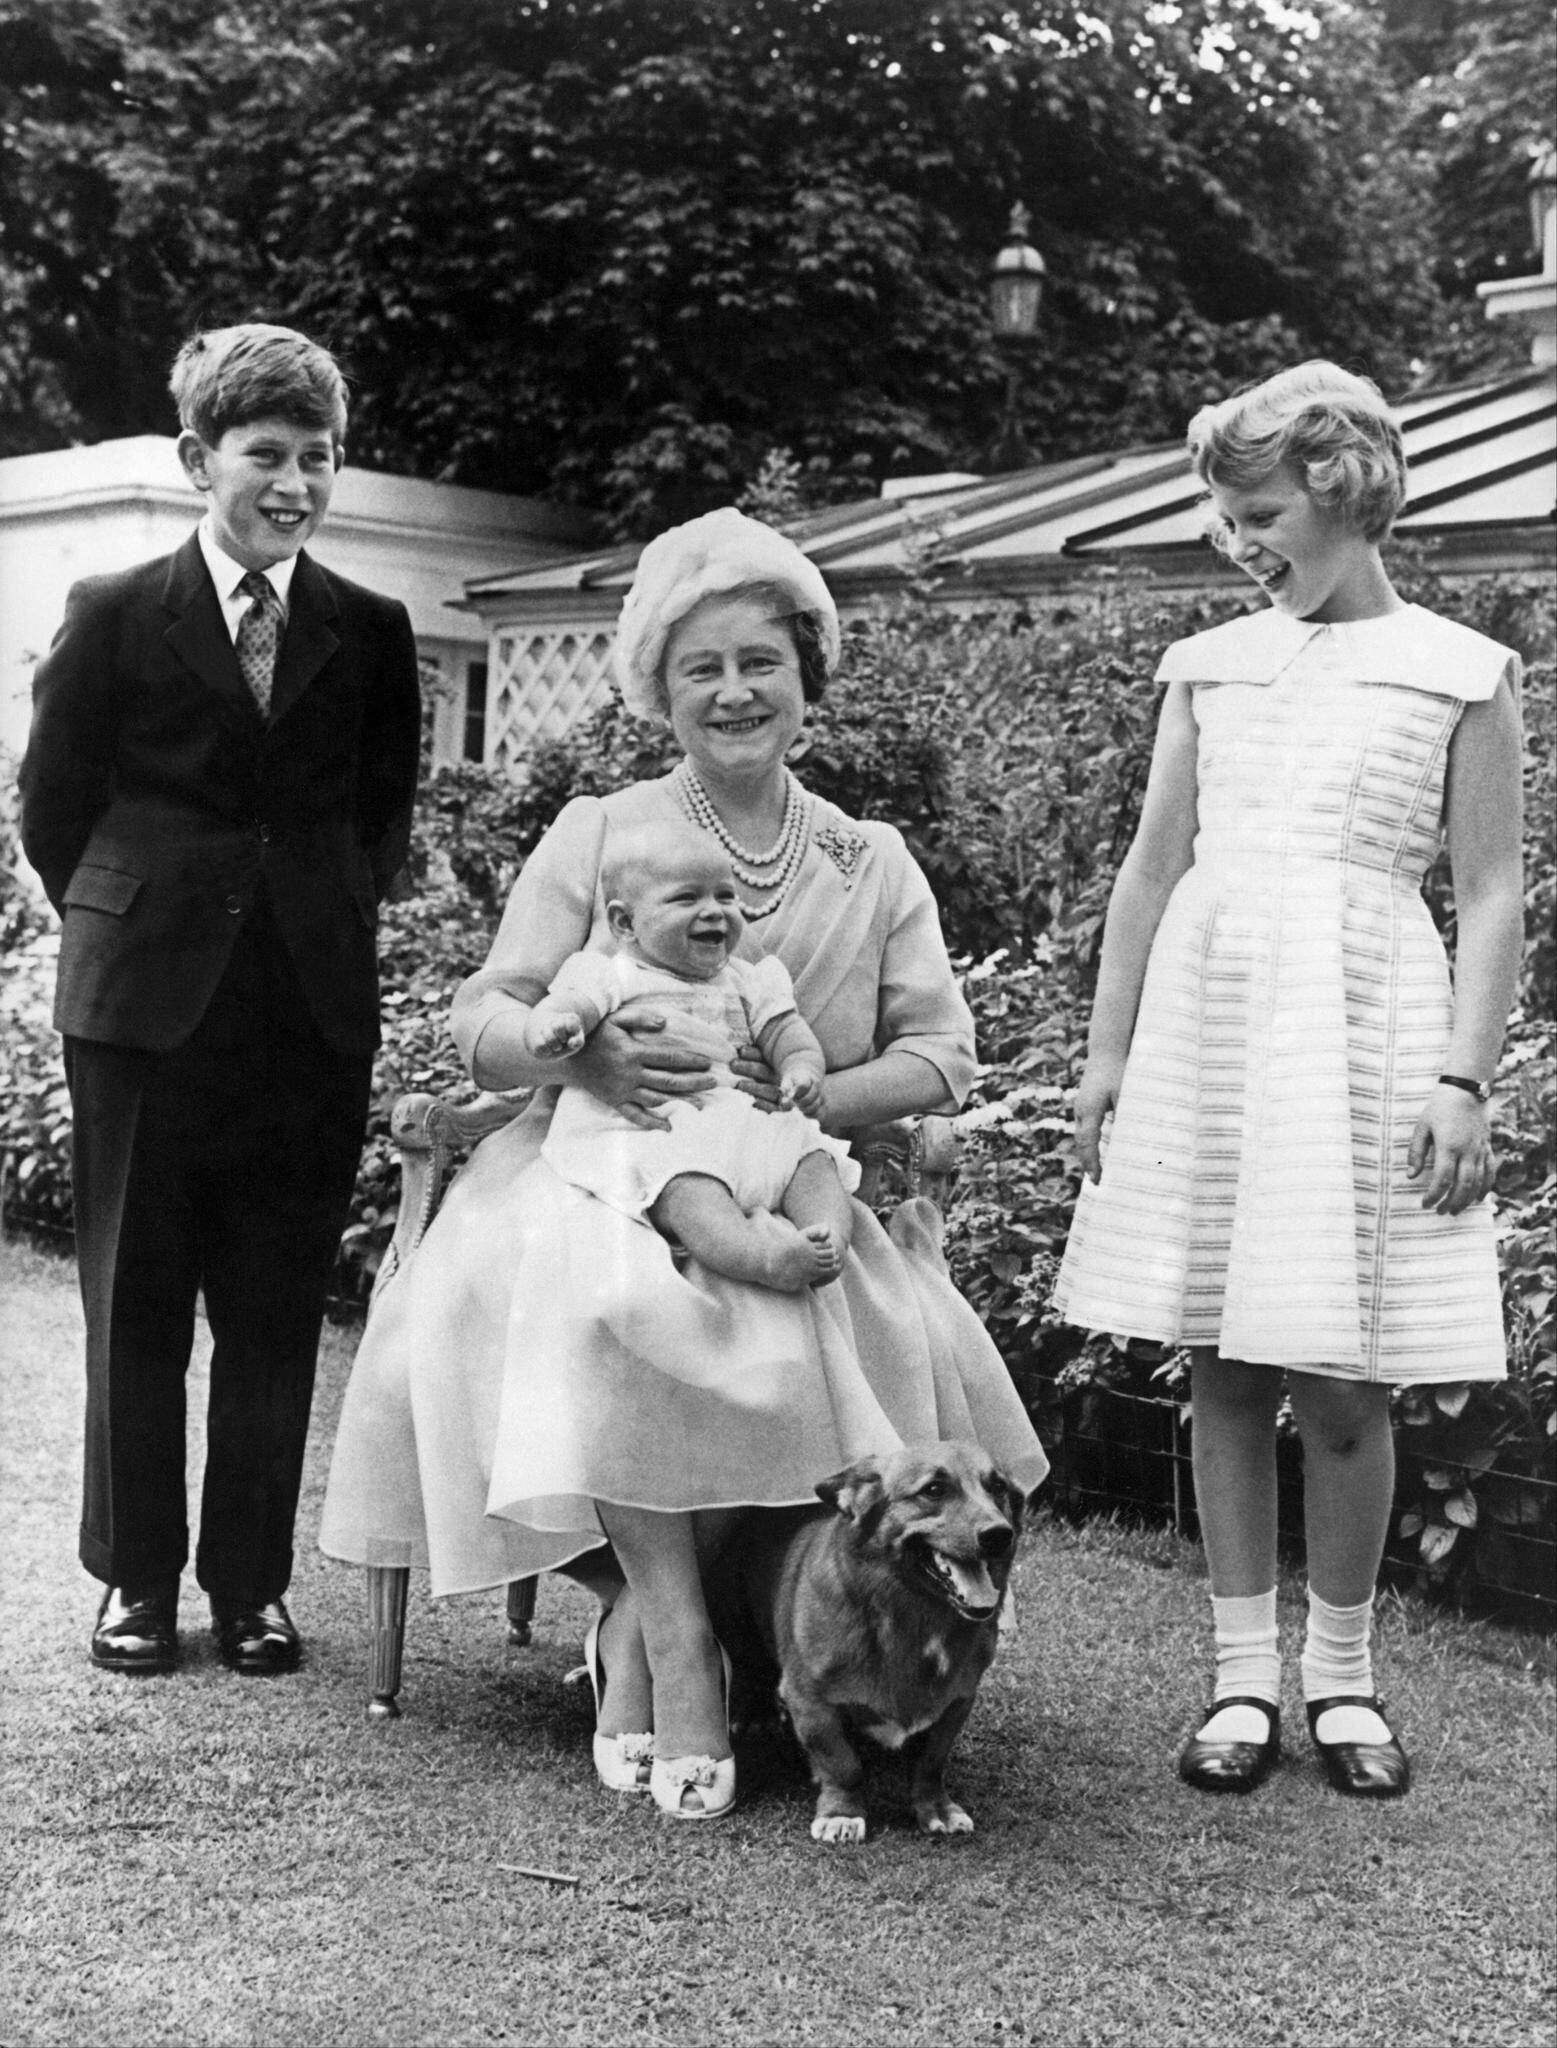 La reina Isabel, -madre de la actual monarca- sostiene al príncipe Andrés en su regazo y aparece flanqueada del príncipe Carlos y la princesa Ana durante su cumpleaños 60, celebrado el 4 de agosto de 1960 en el jardín de la residencia real Clarence House. (AFP)